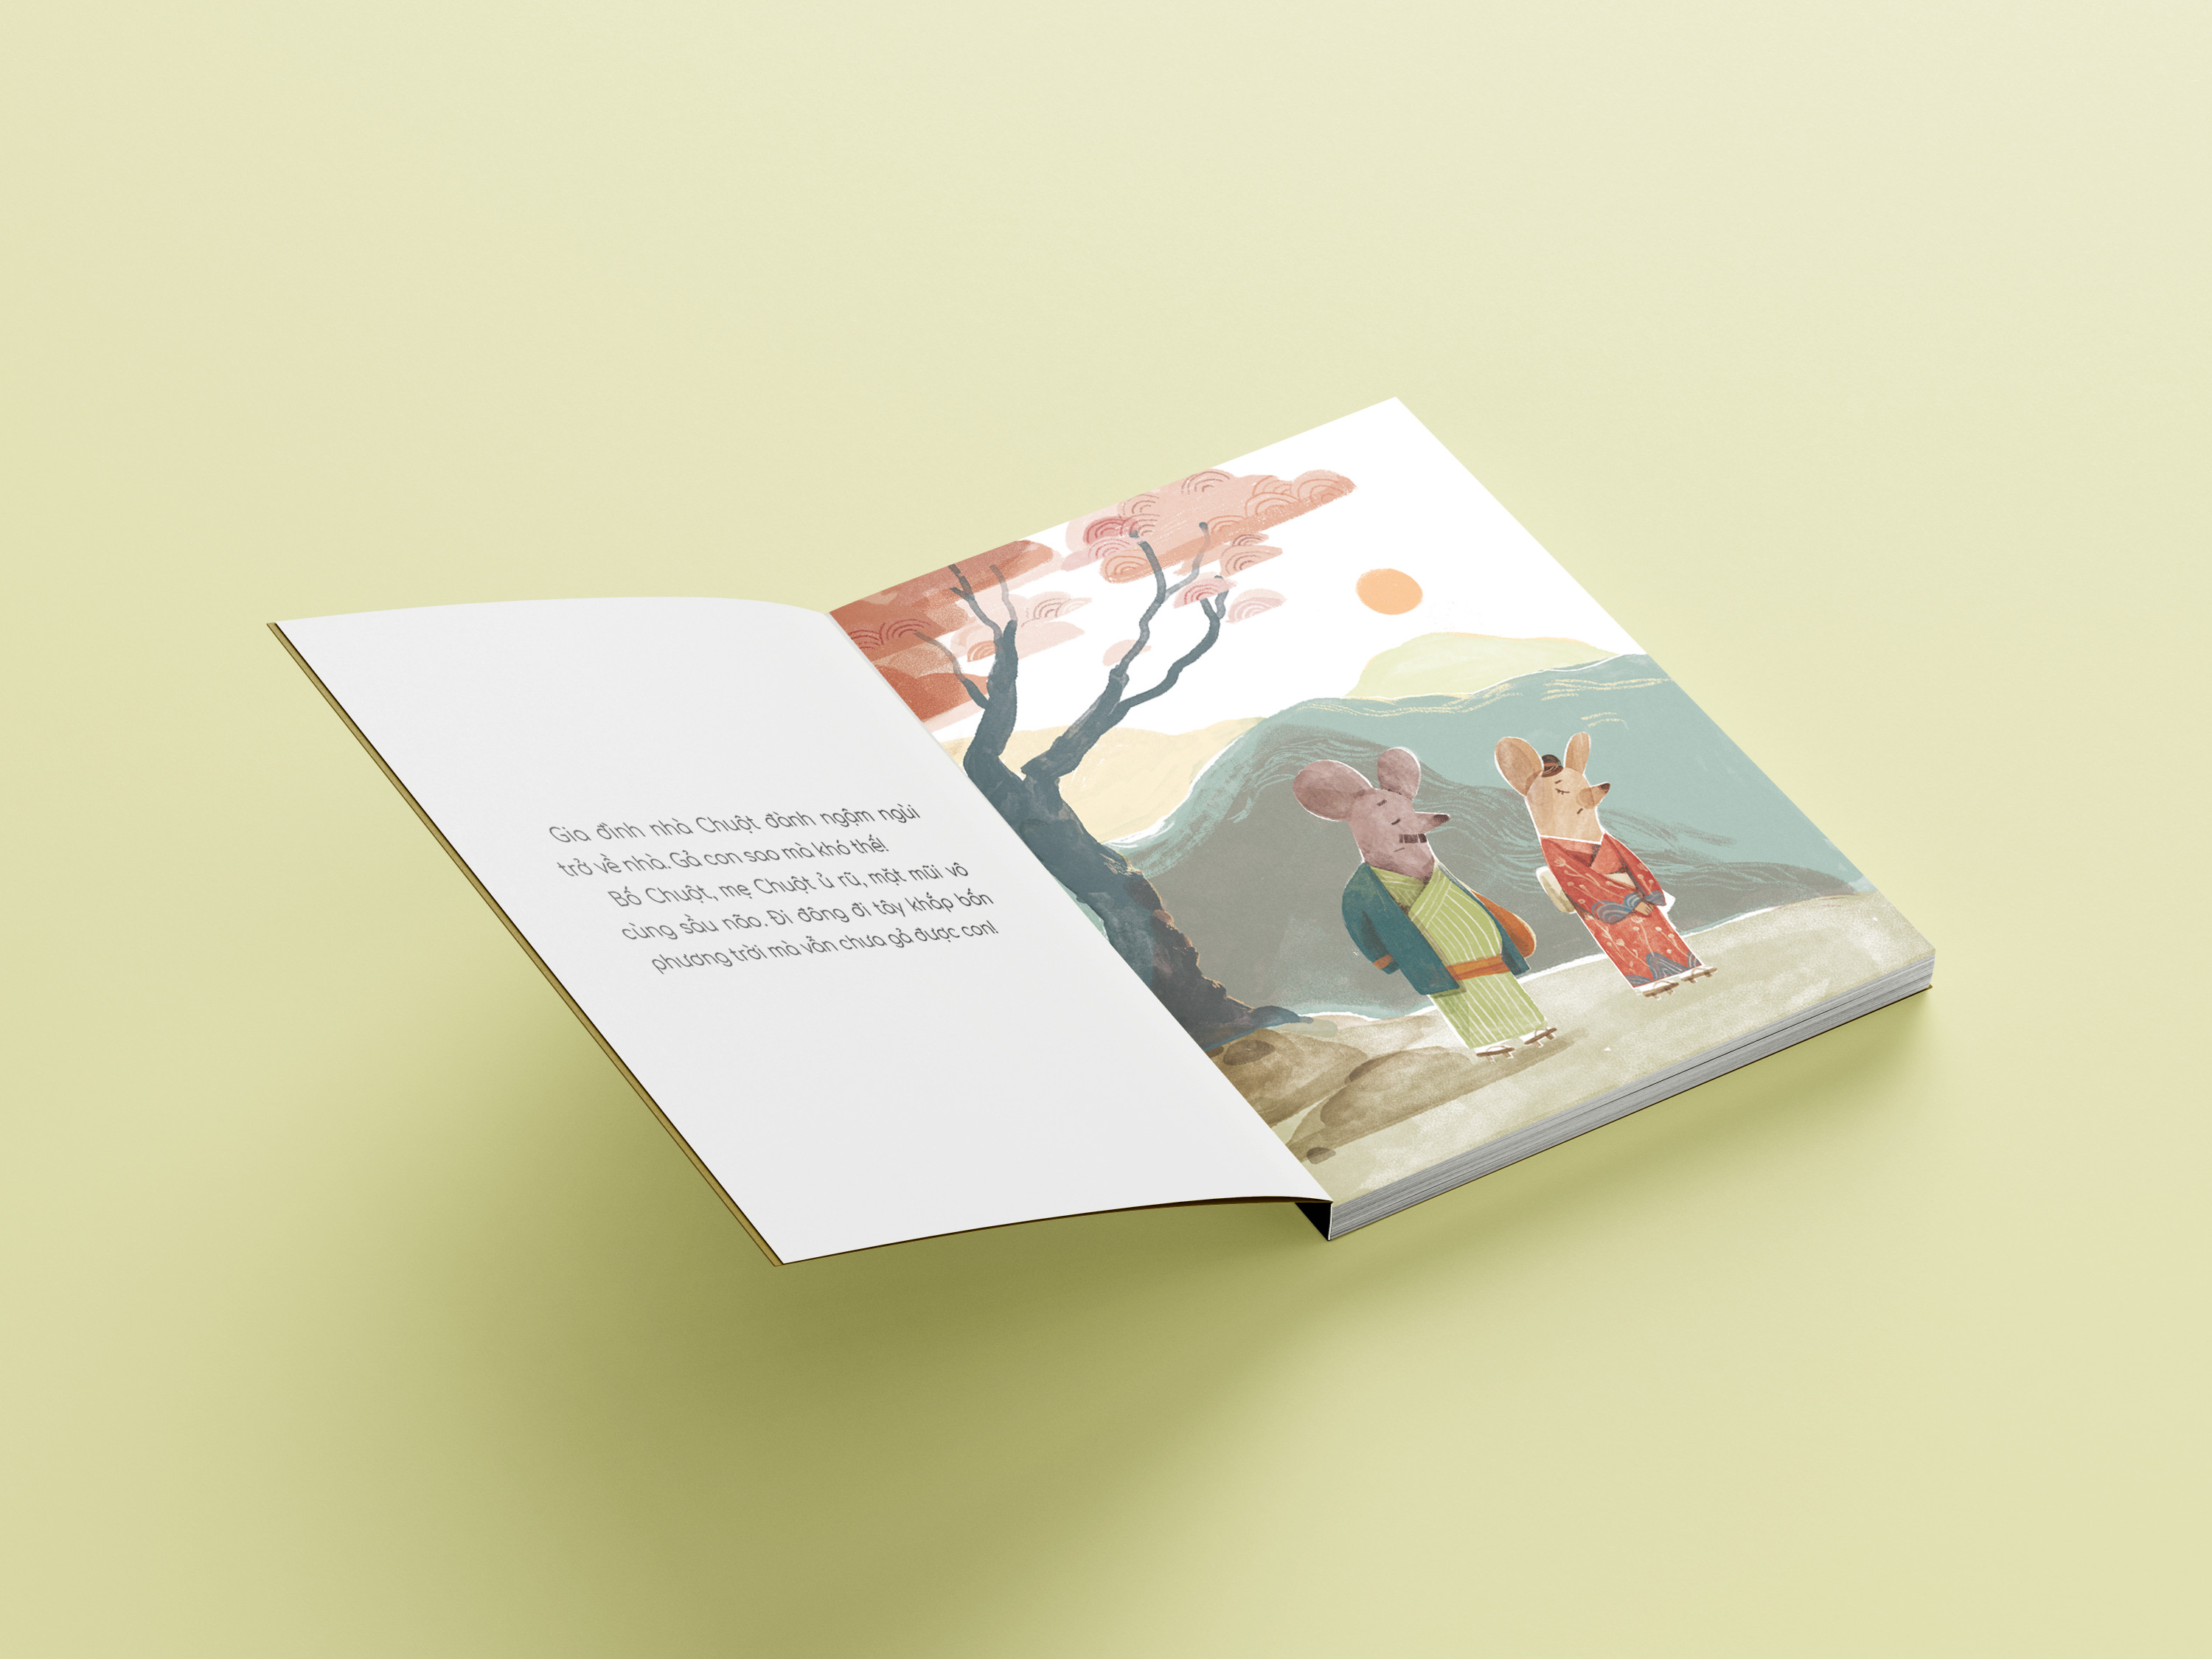 “Bộ truyện kể trước giờ đi ngủ” –  Bộ 04 cuốn (Dành cho trẻ từ độ tuổi 1+)